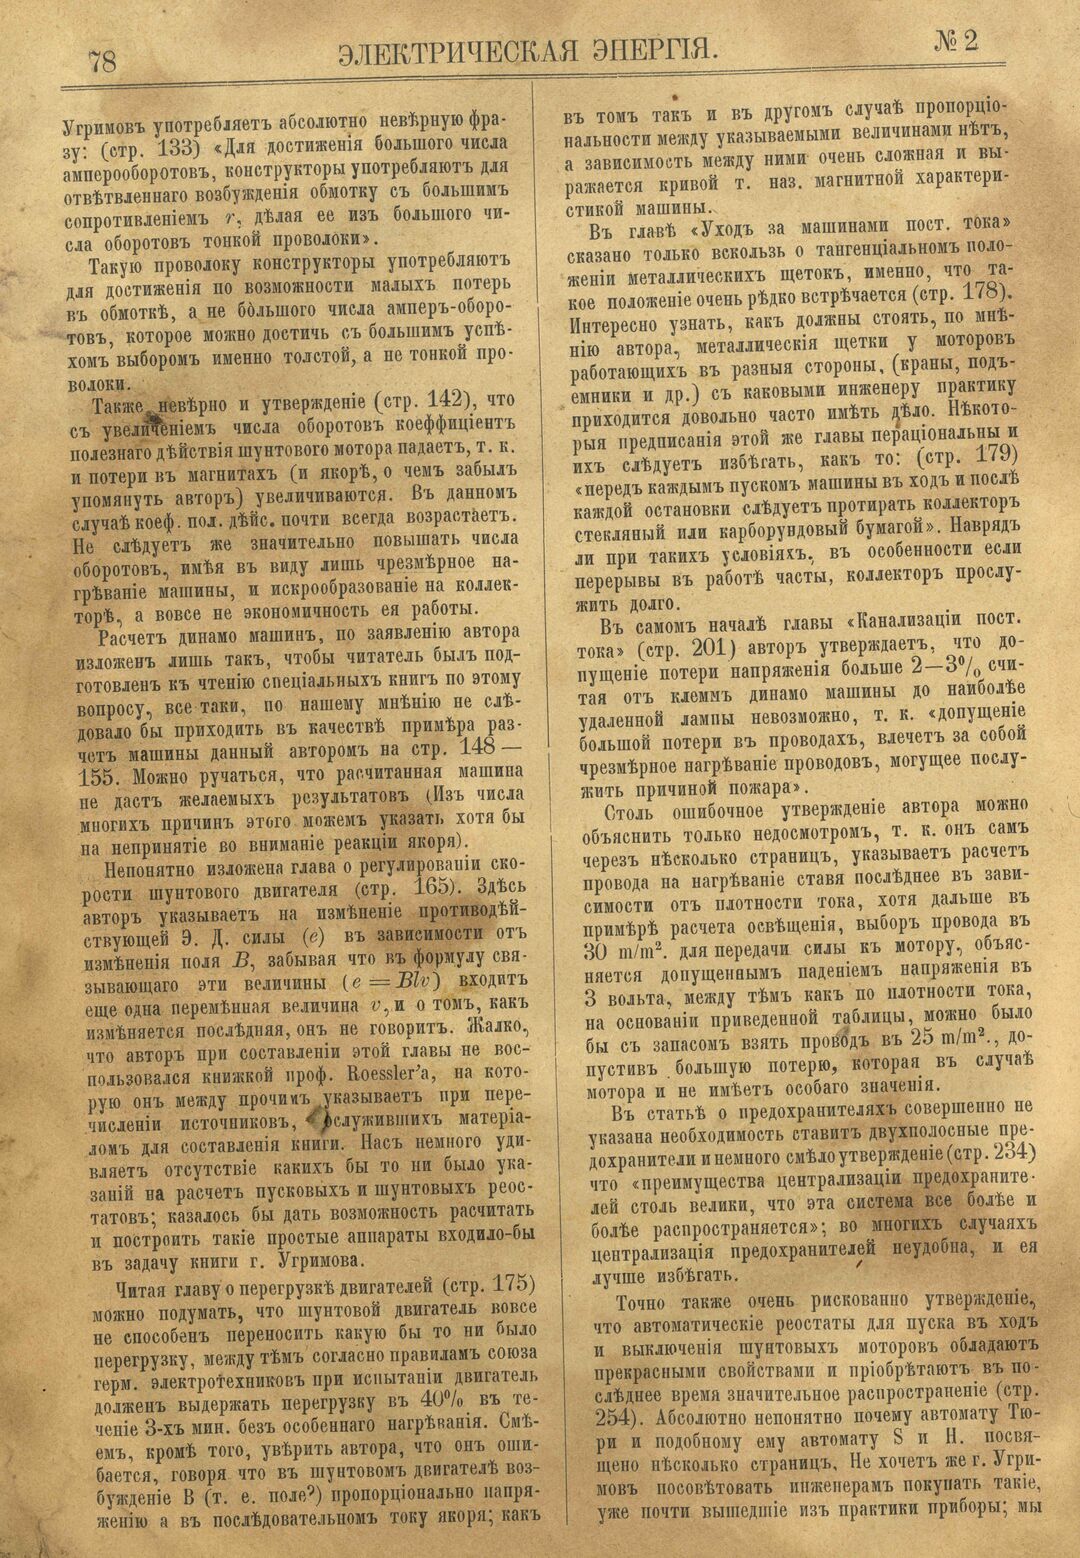 Рис. 1. Журнал Электрическая Энергiя, 2 номер, февраль, 1904 года, страница 78